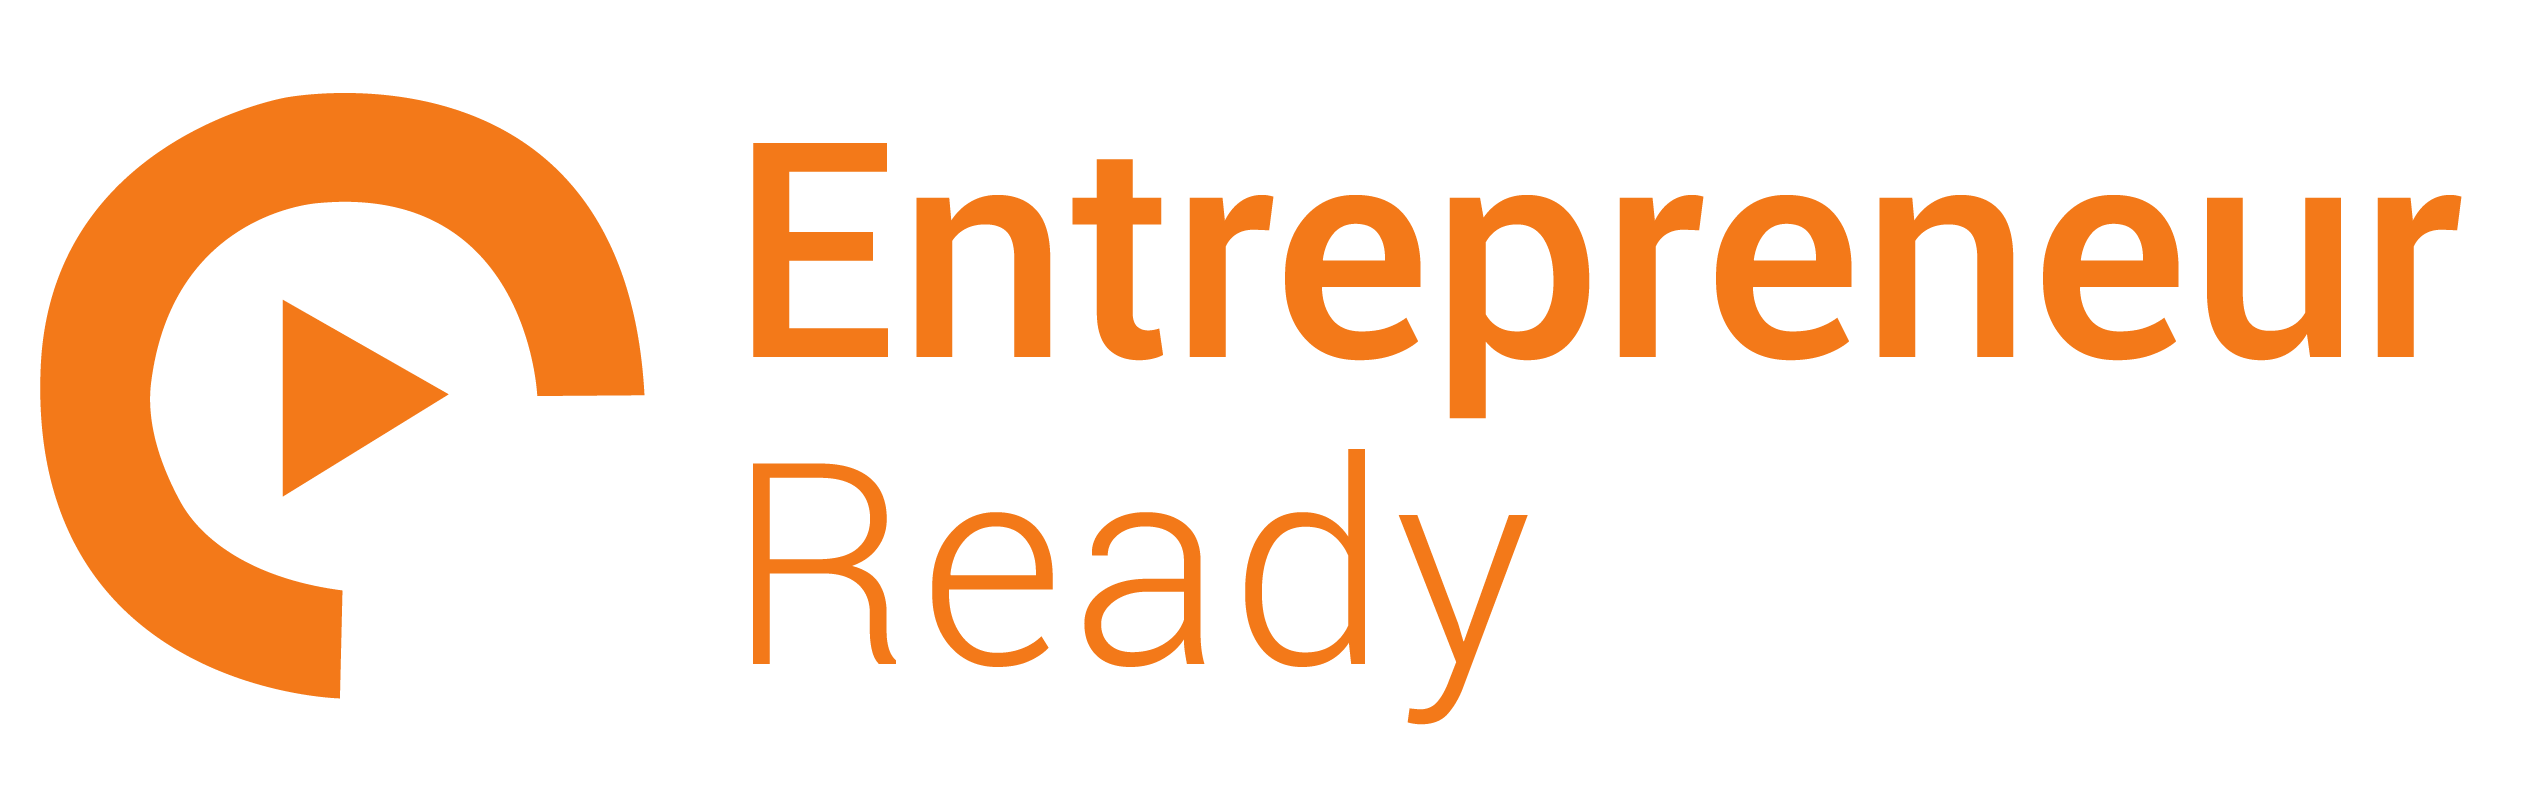 Entrepreneur Ready